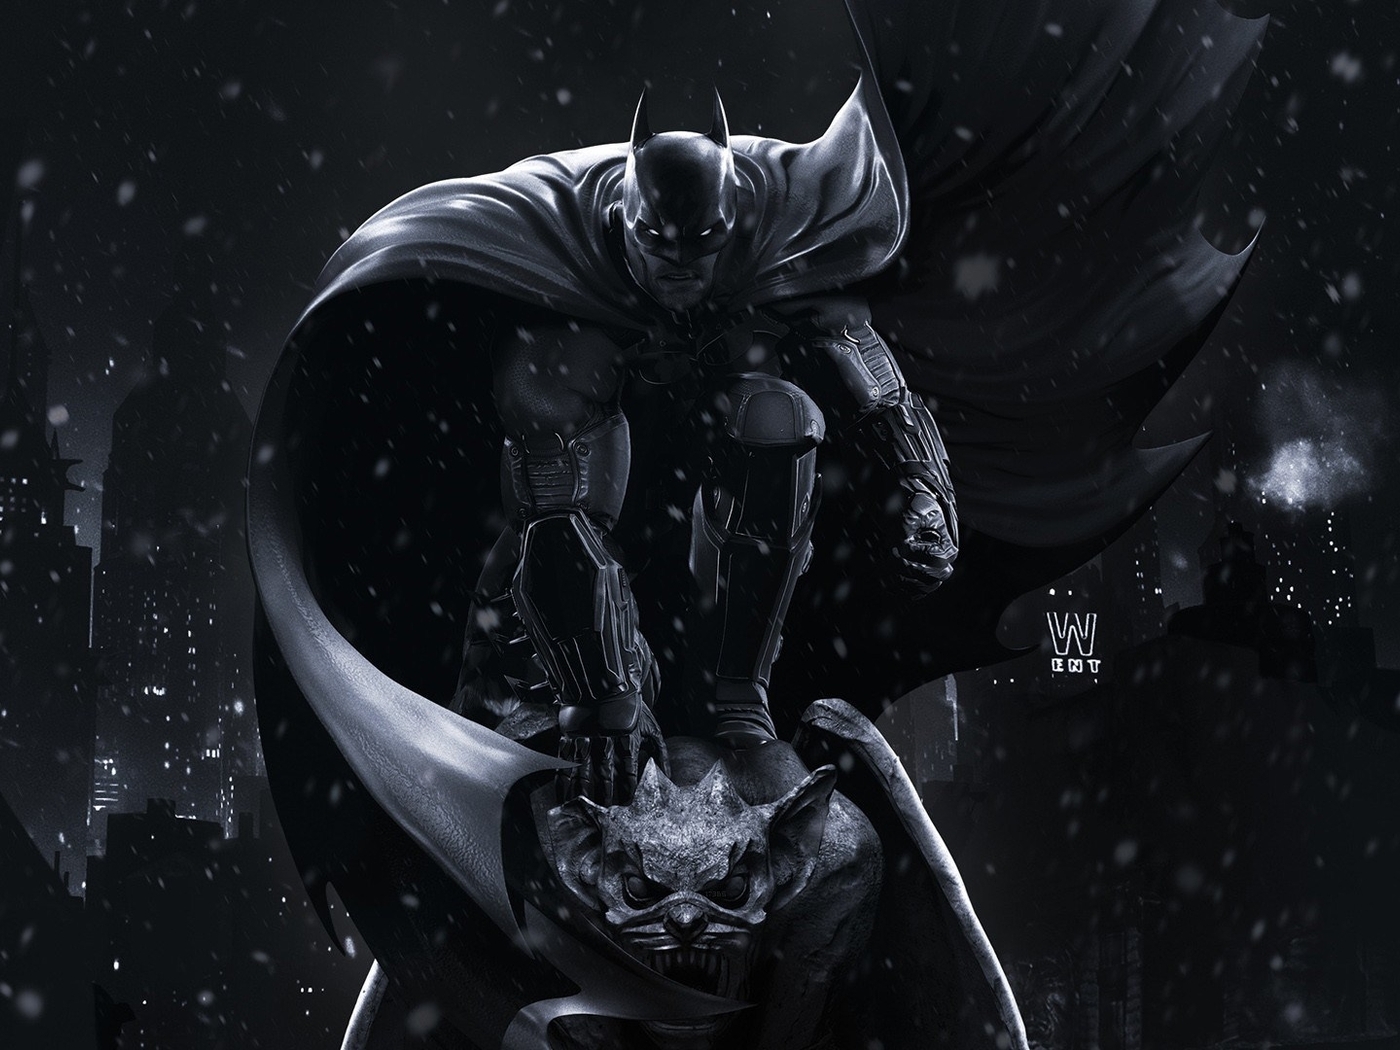 Image: Batman Arkham Origins, Batman, cloak, gargoyle, night, city